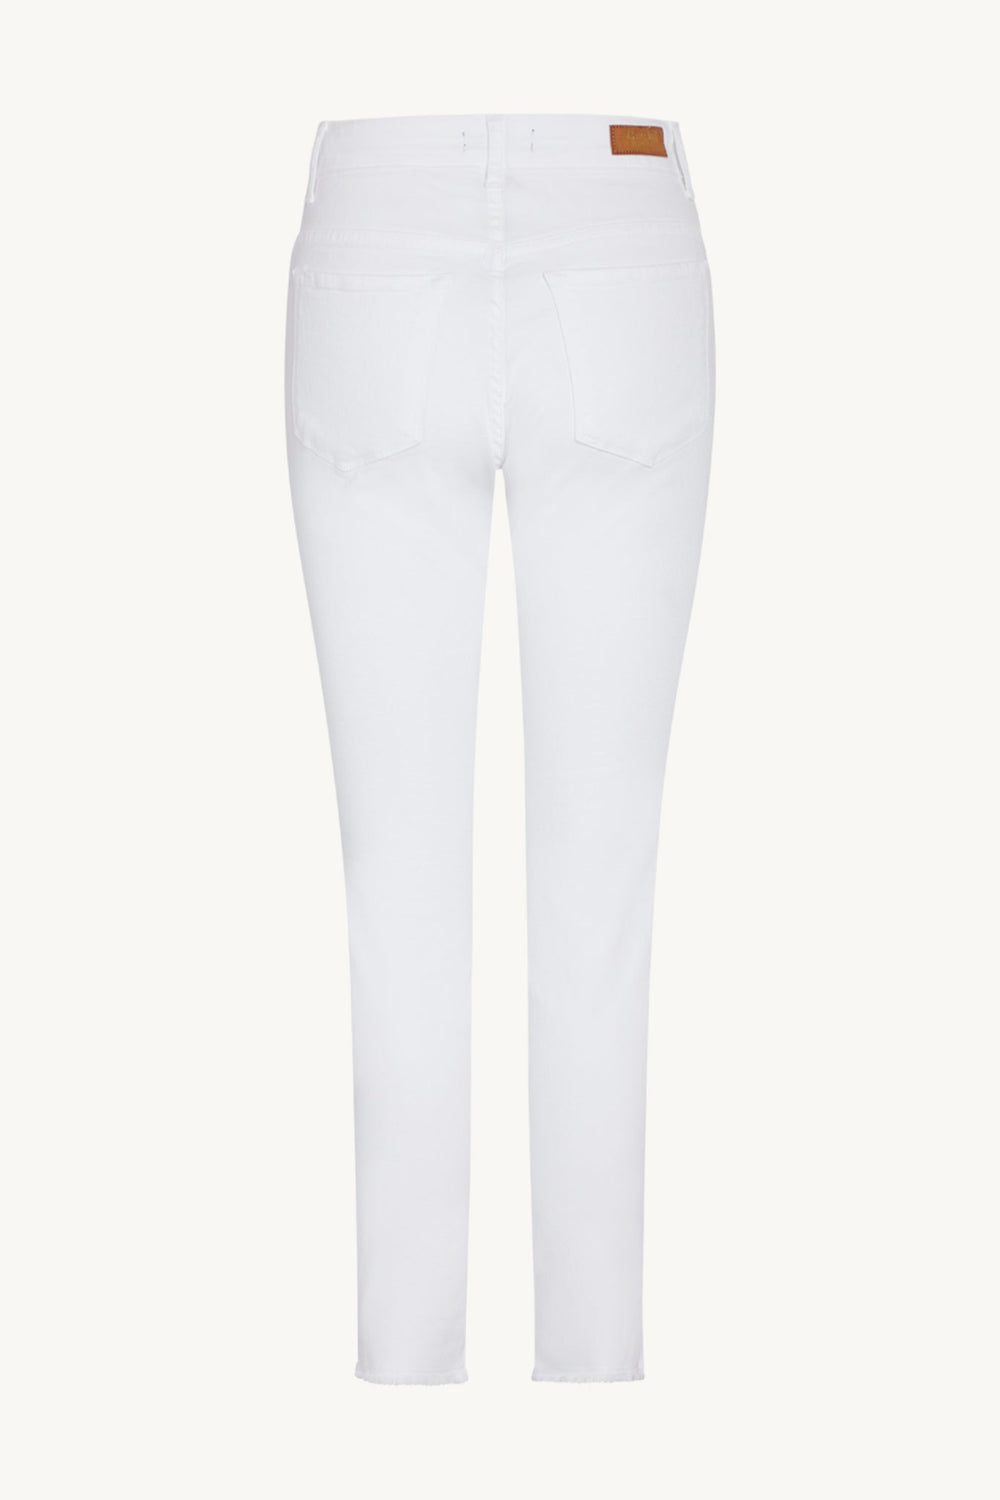 Jamie-Cw - Jeans White | Bukser | Smuk - Dameklær på nett